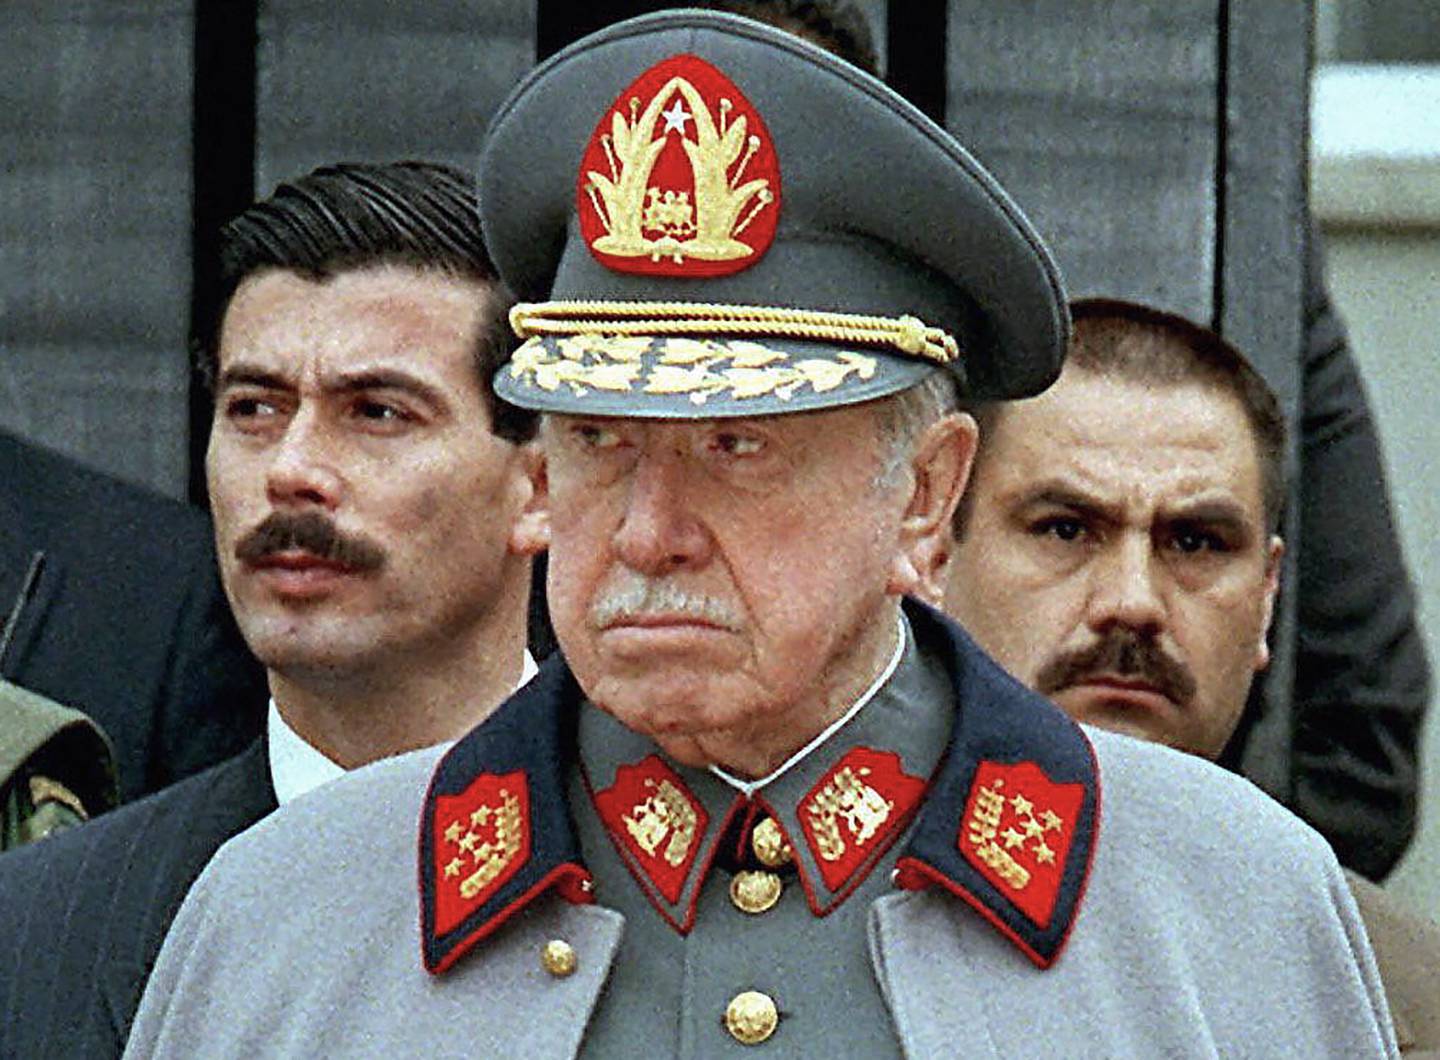 Augusto Pinochet suspendió la democracia usando la fuerza militar para derrocar a un presidente elegido popularmente y gobernar Chile con mano de hierro que vio a miles de sus súbditos torturados y asesinados.